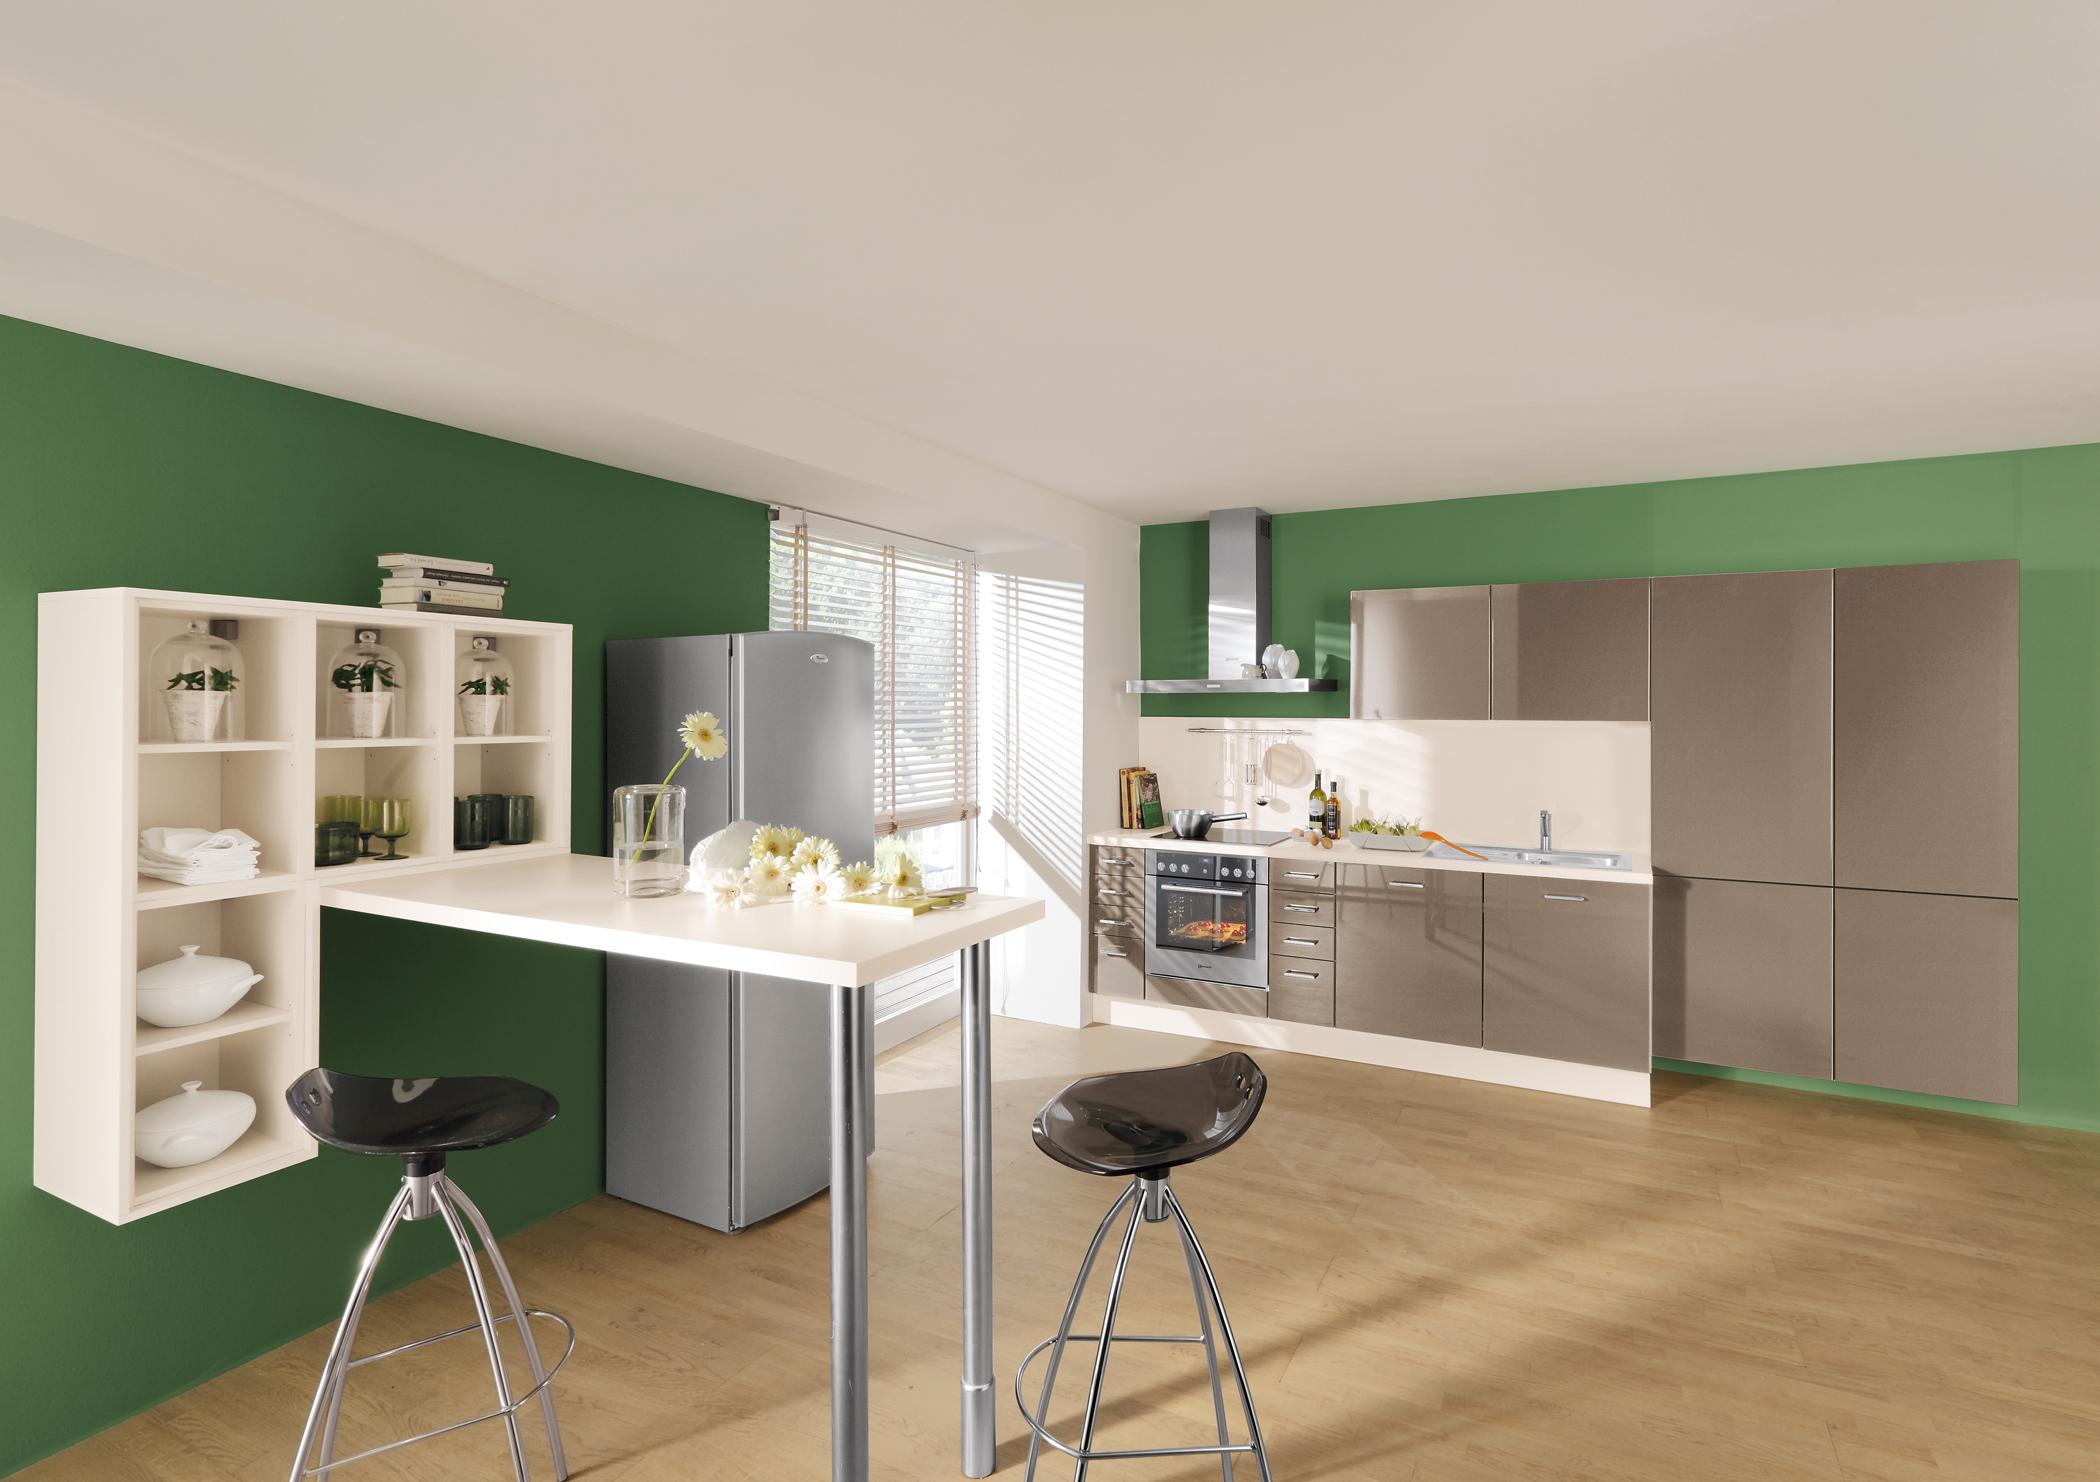 Grüne Wände in der Küche #barhocker #wandregal #grüntapete ©impuls Küchen/Alno AG